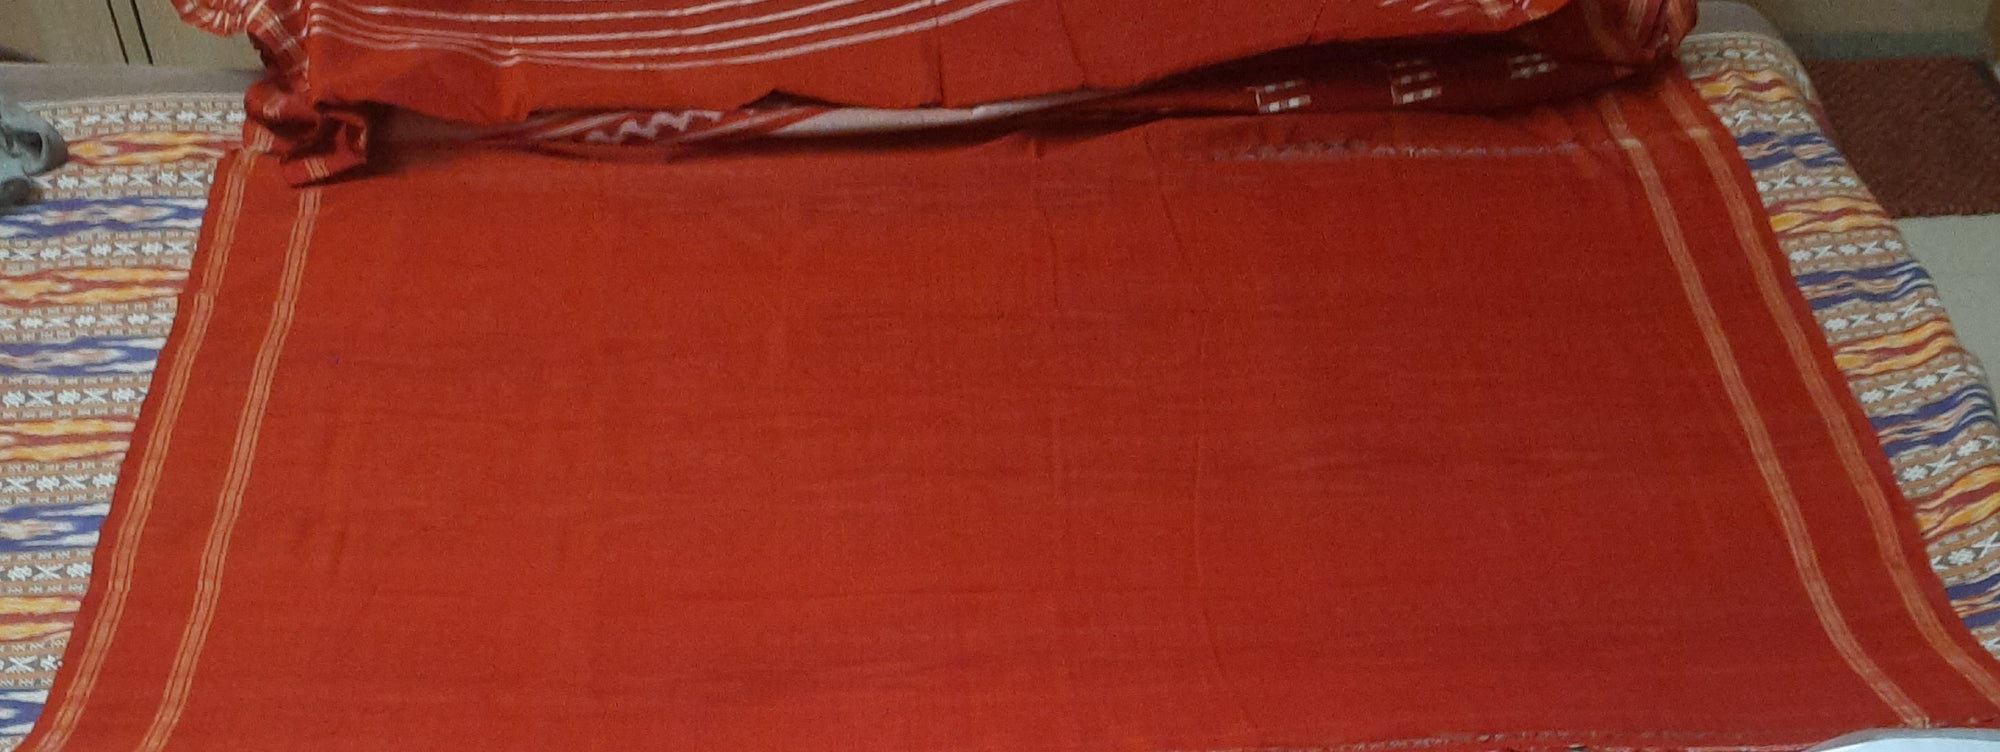 Rust Patli Pleats cotton Sambalpuri Saree with running blouse piece